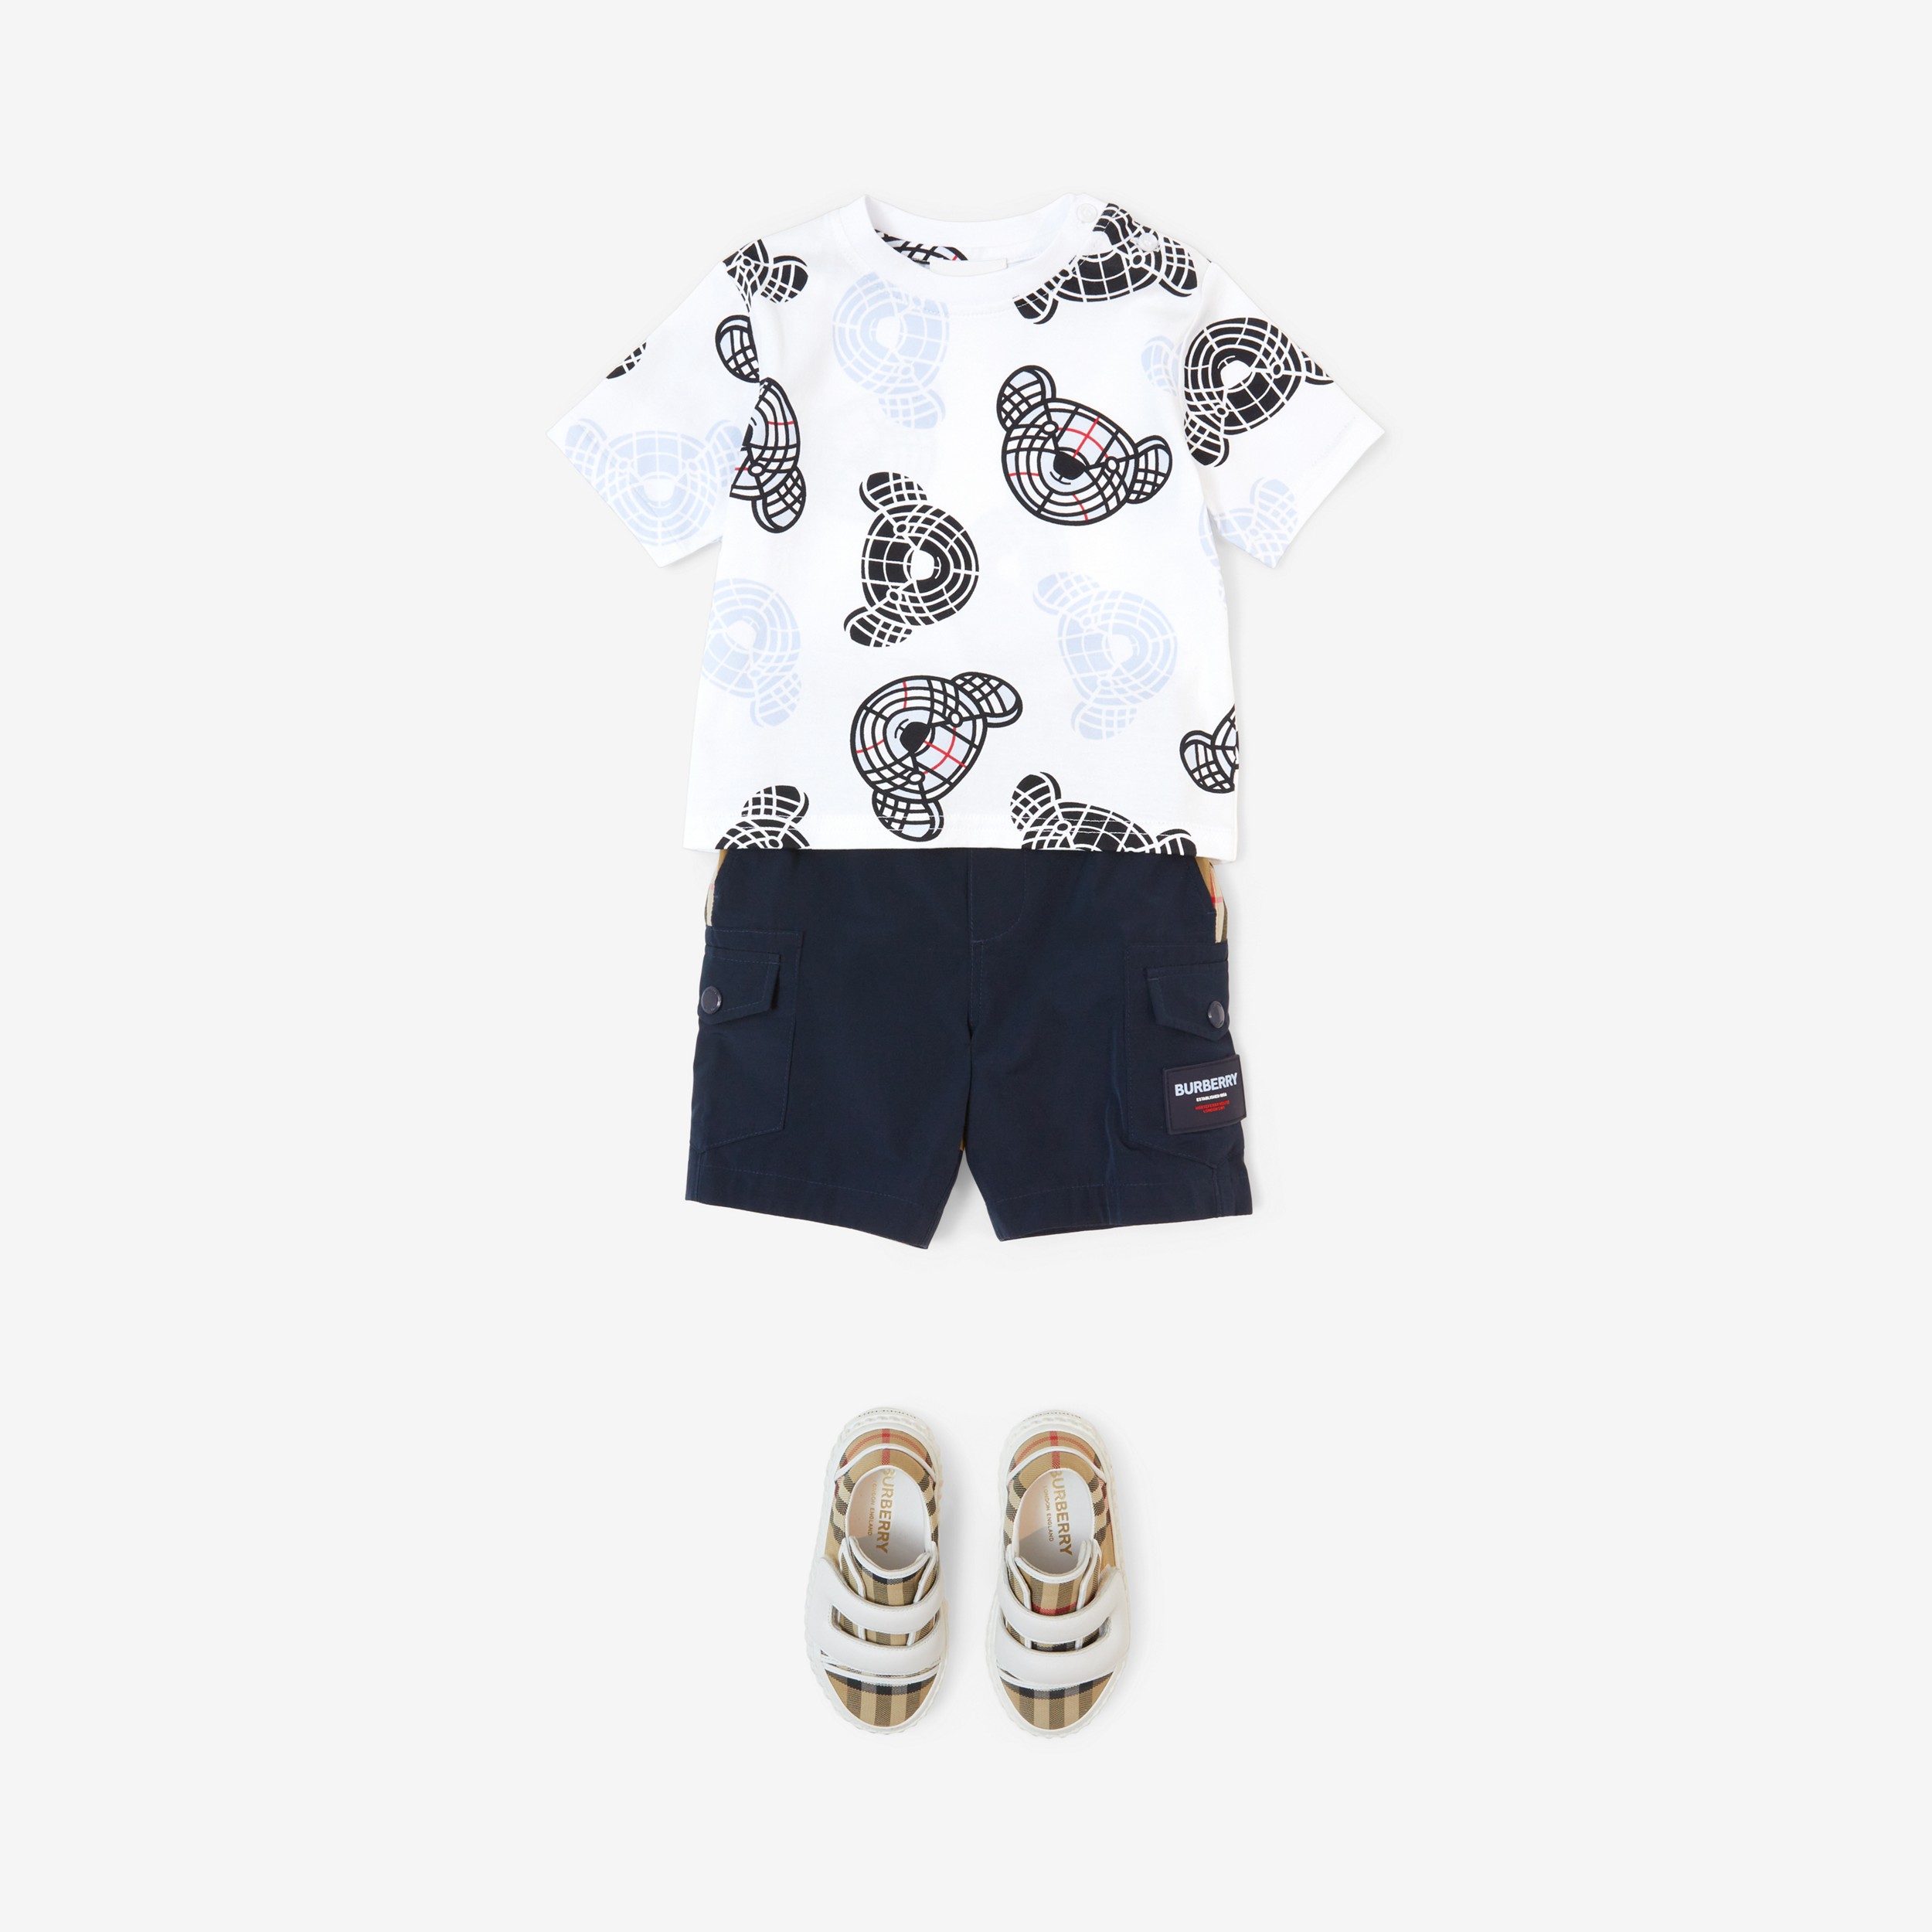 Camiseta de algodão com estampa Thomas Bear (Branco) - Crianças | Burberry® oficial - 4